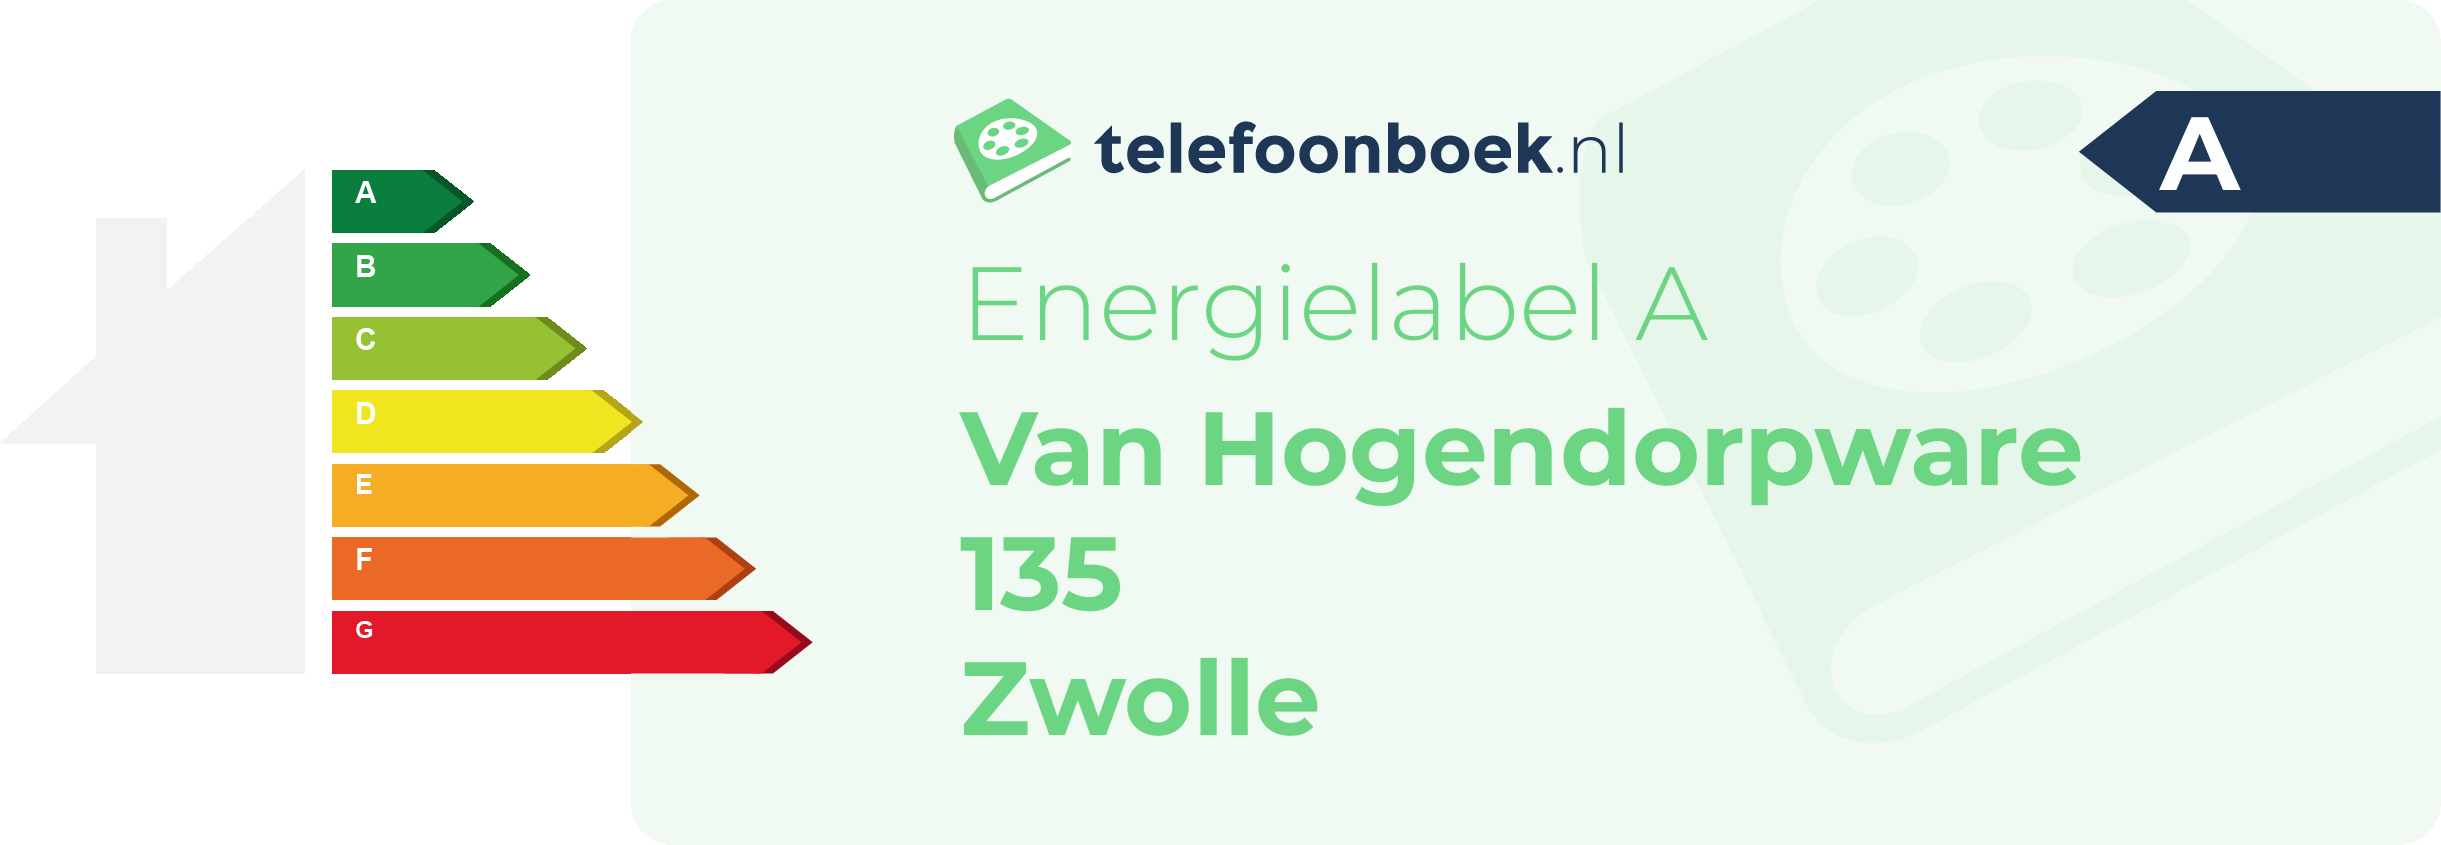 Energielabel Van Hogendorpware 135 Zwolle